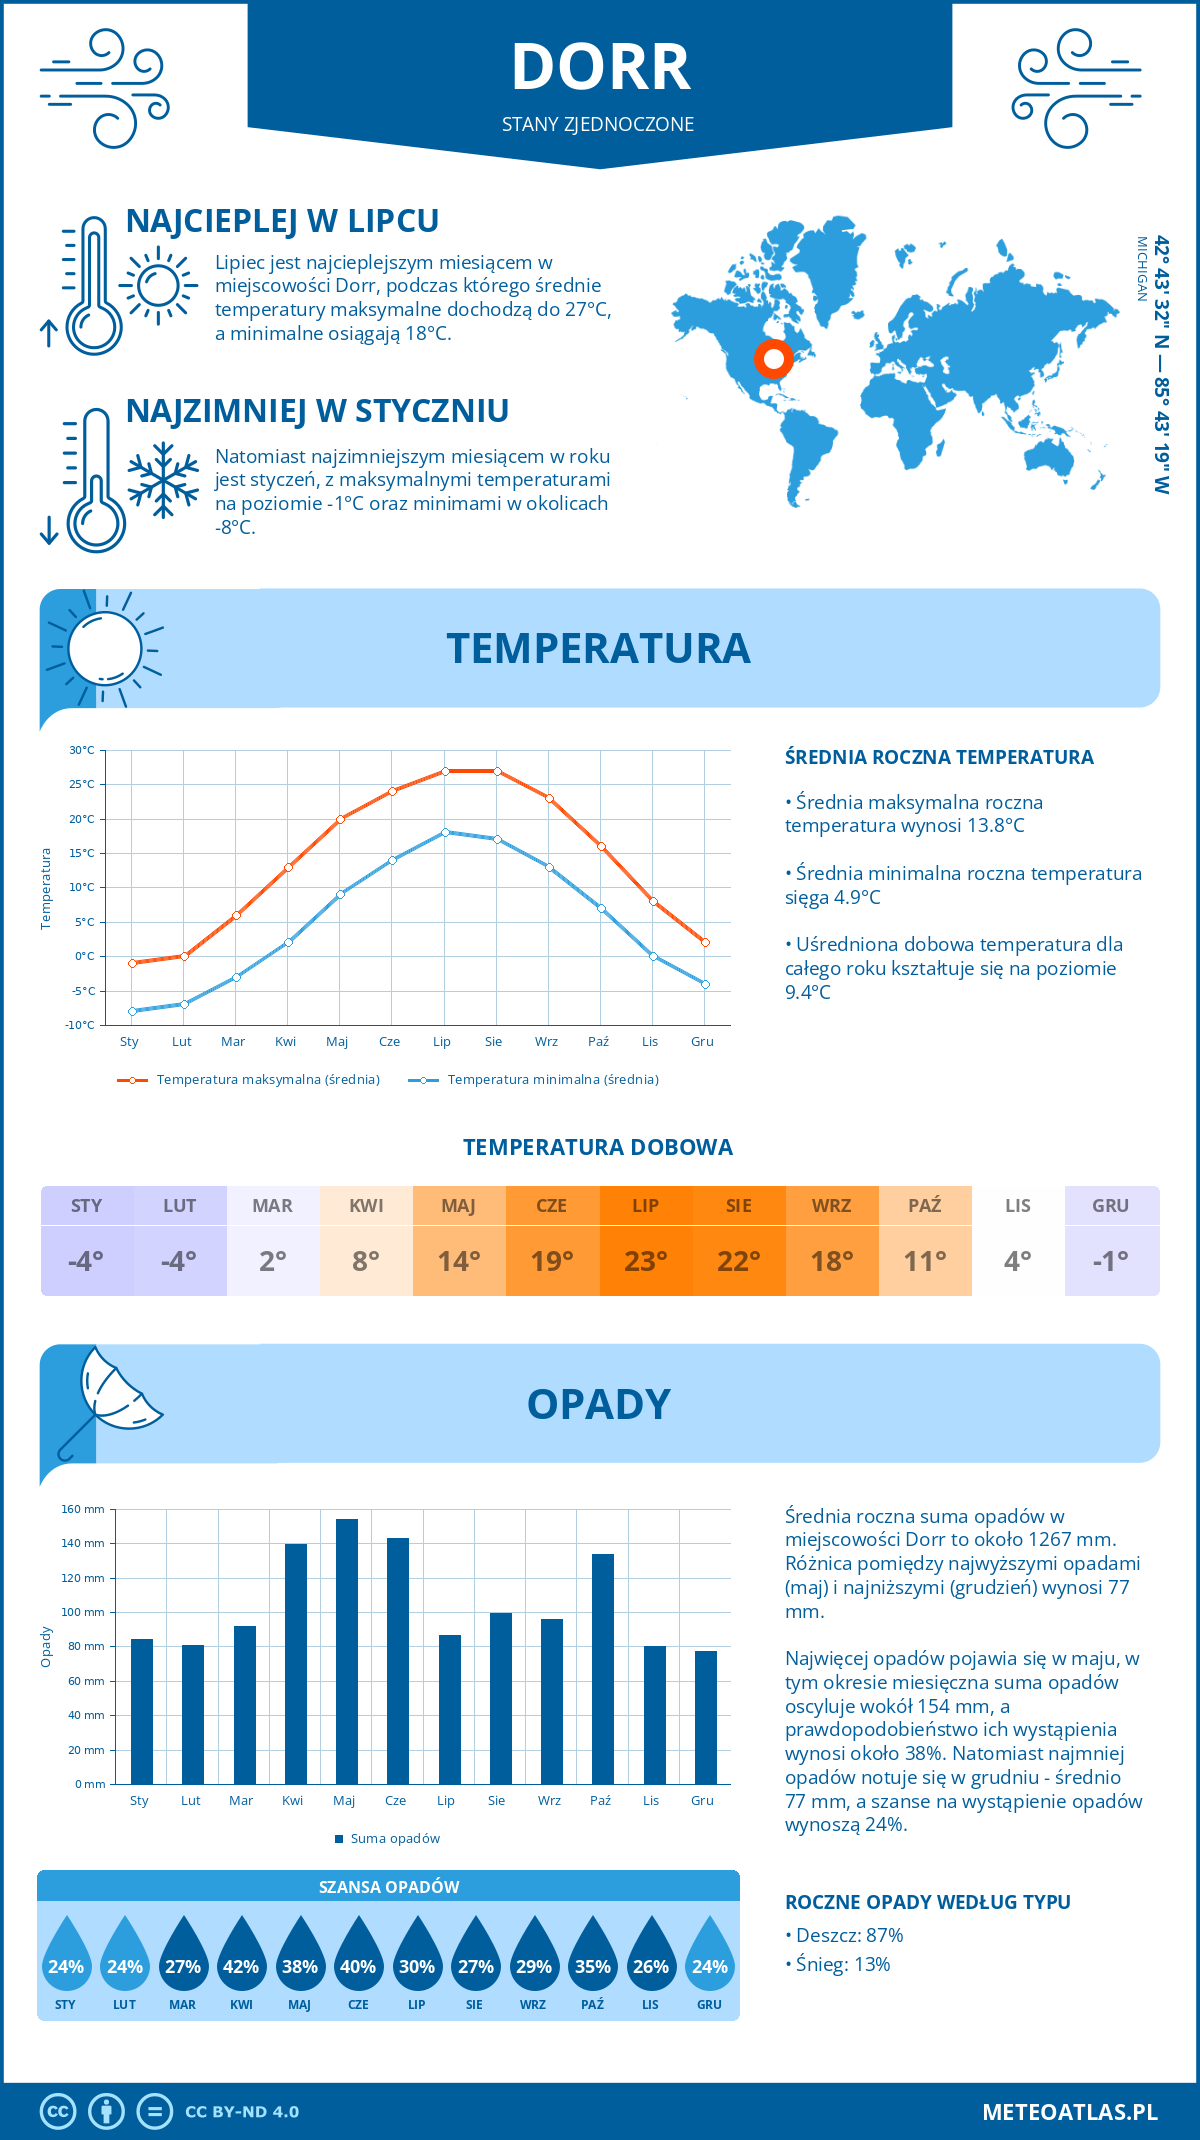 Pogoda Dorr (Stany Zjednoczone). Temperatura oraz opady.